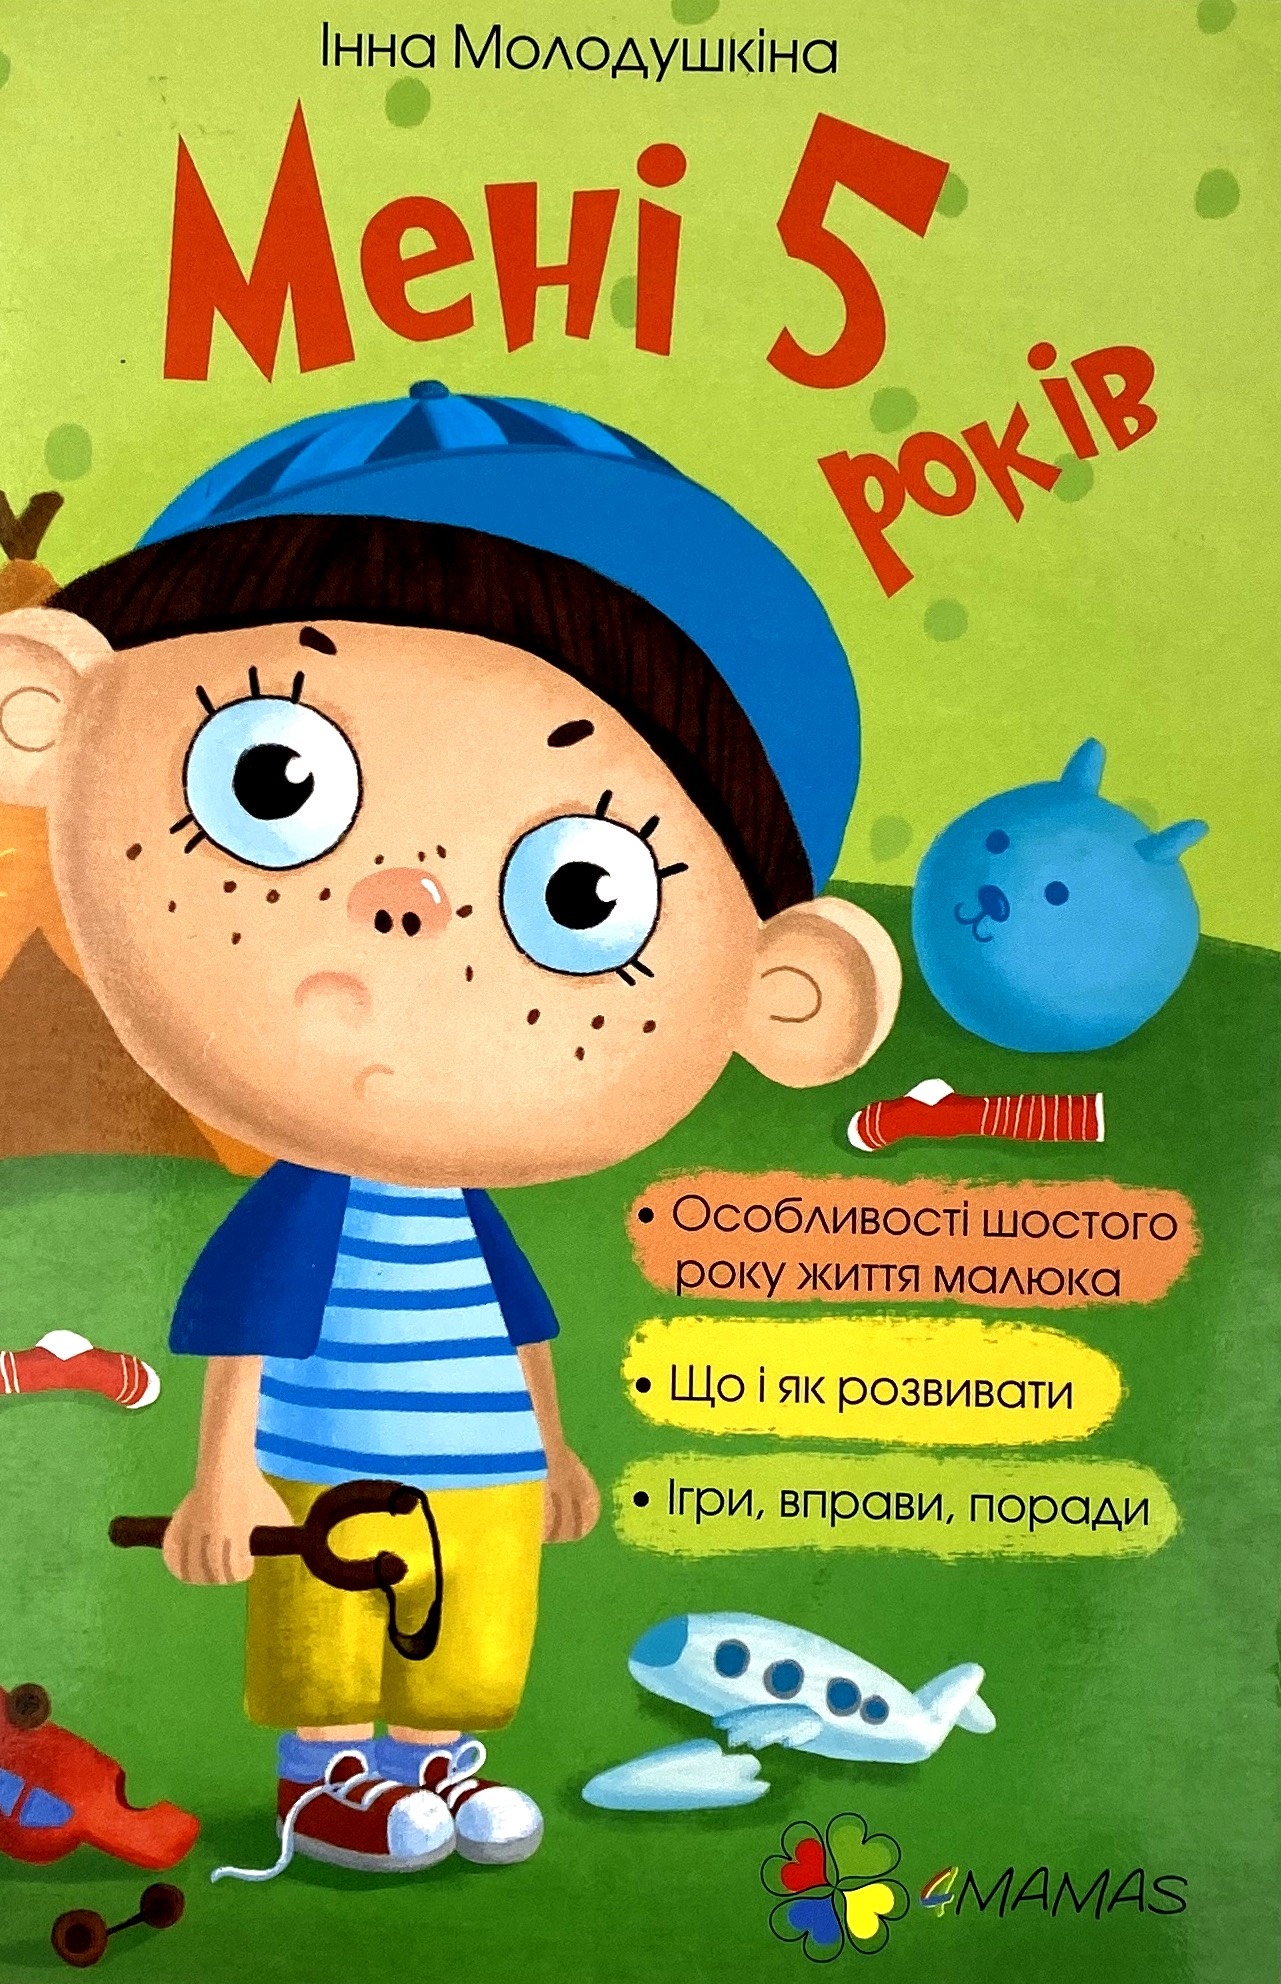 Мені 5 років. Автор — І. Молодушкіна. 